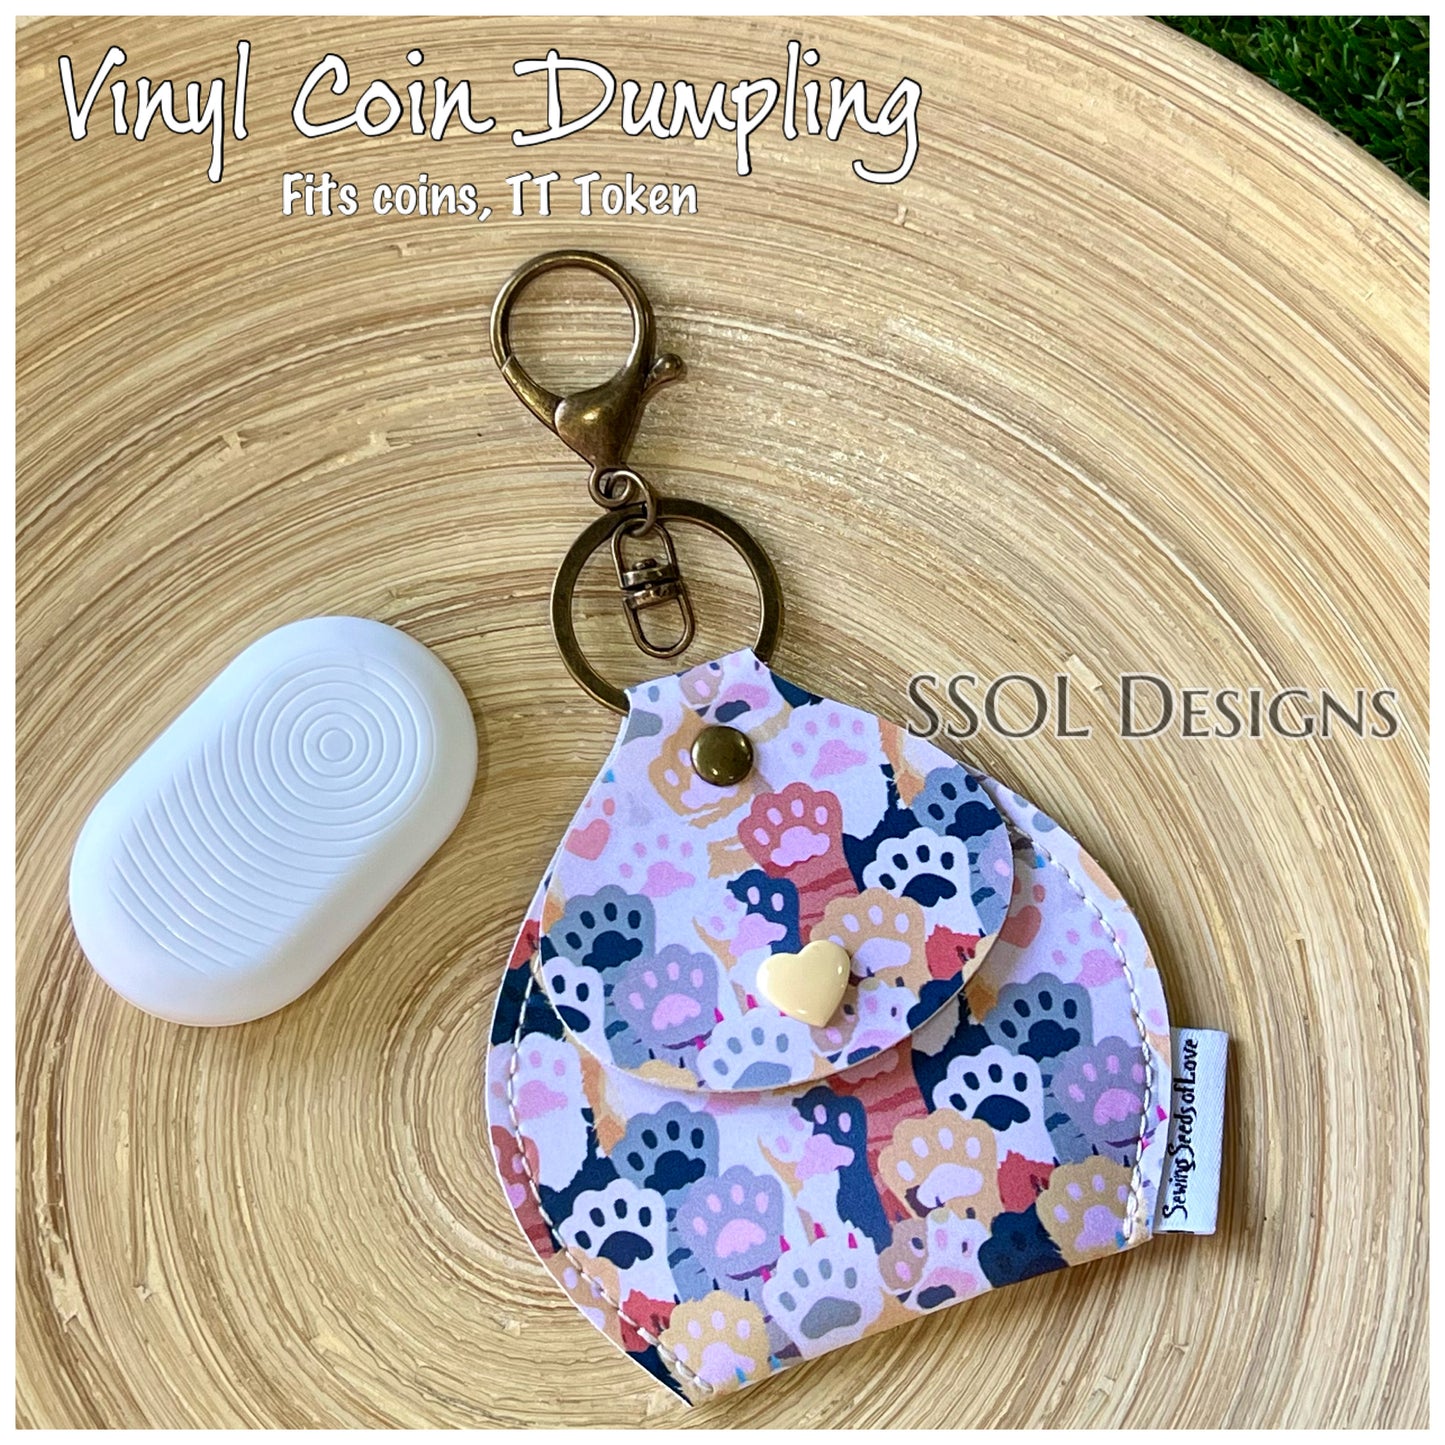 Vinyl Coin Dumpling - VCD17